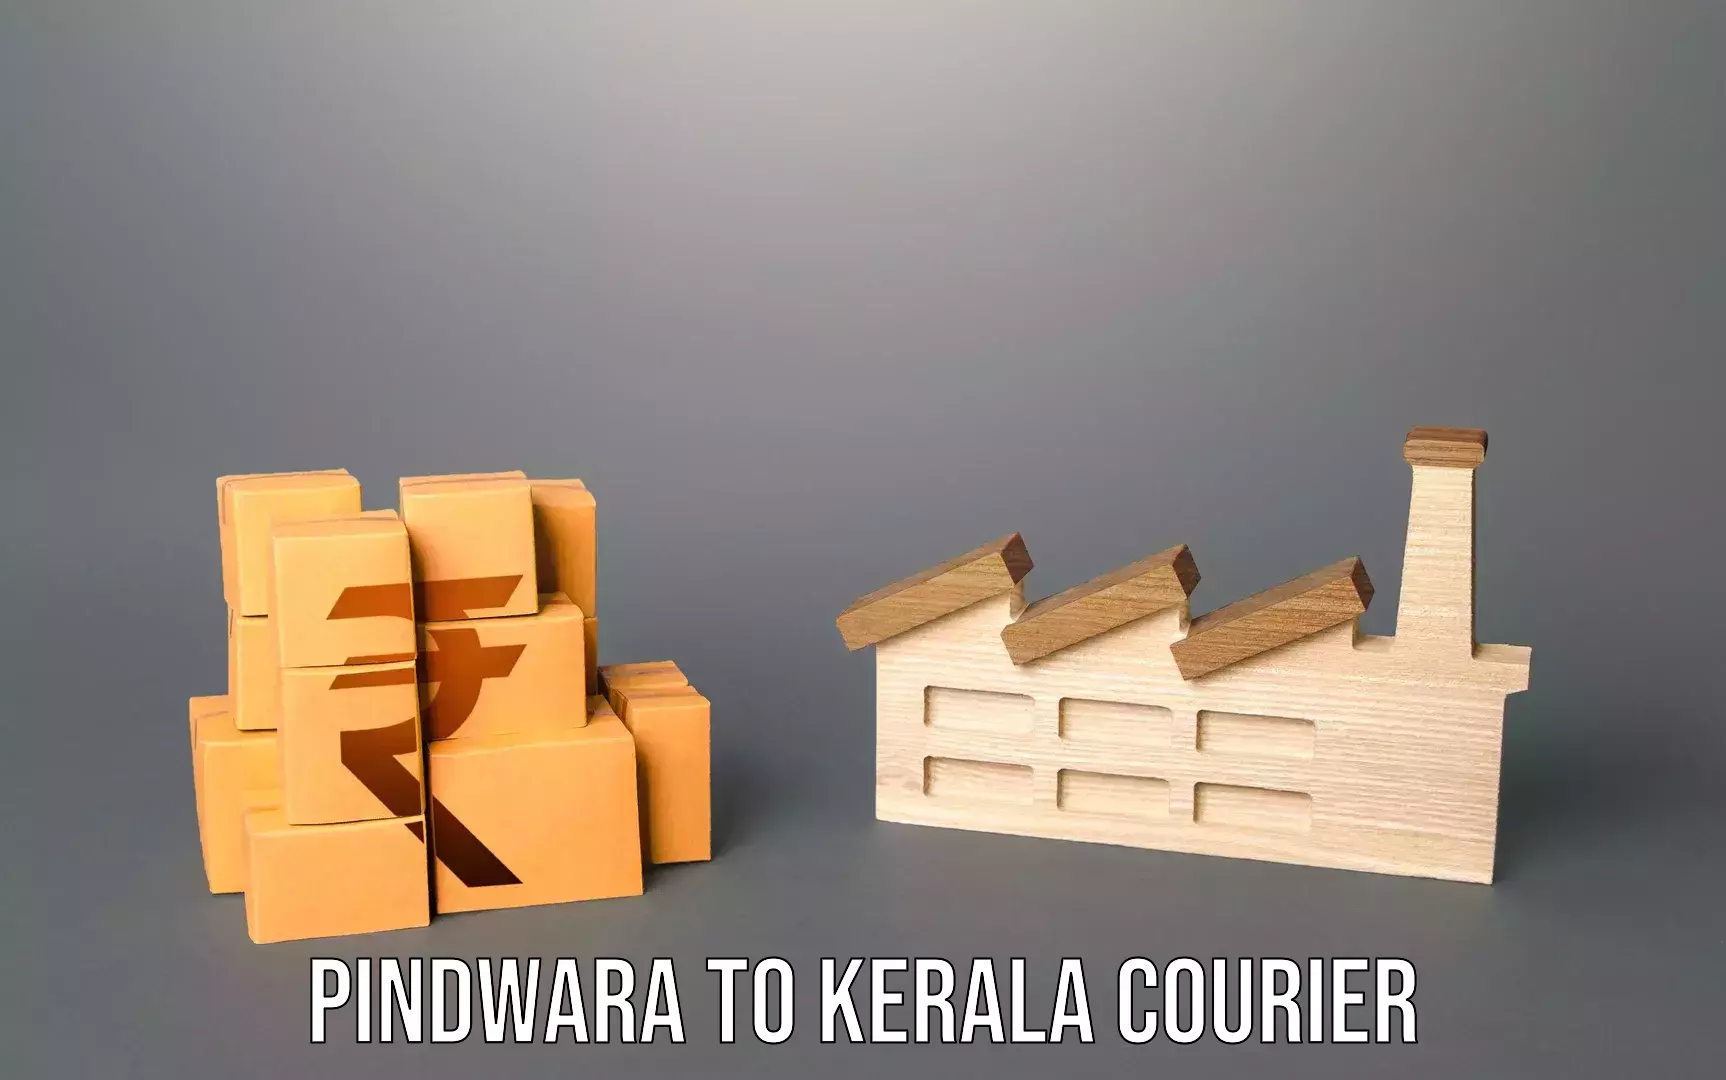 Luggage dispatch service Pindwara to Kerala